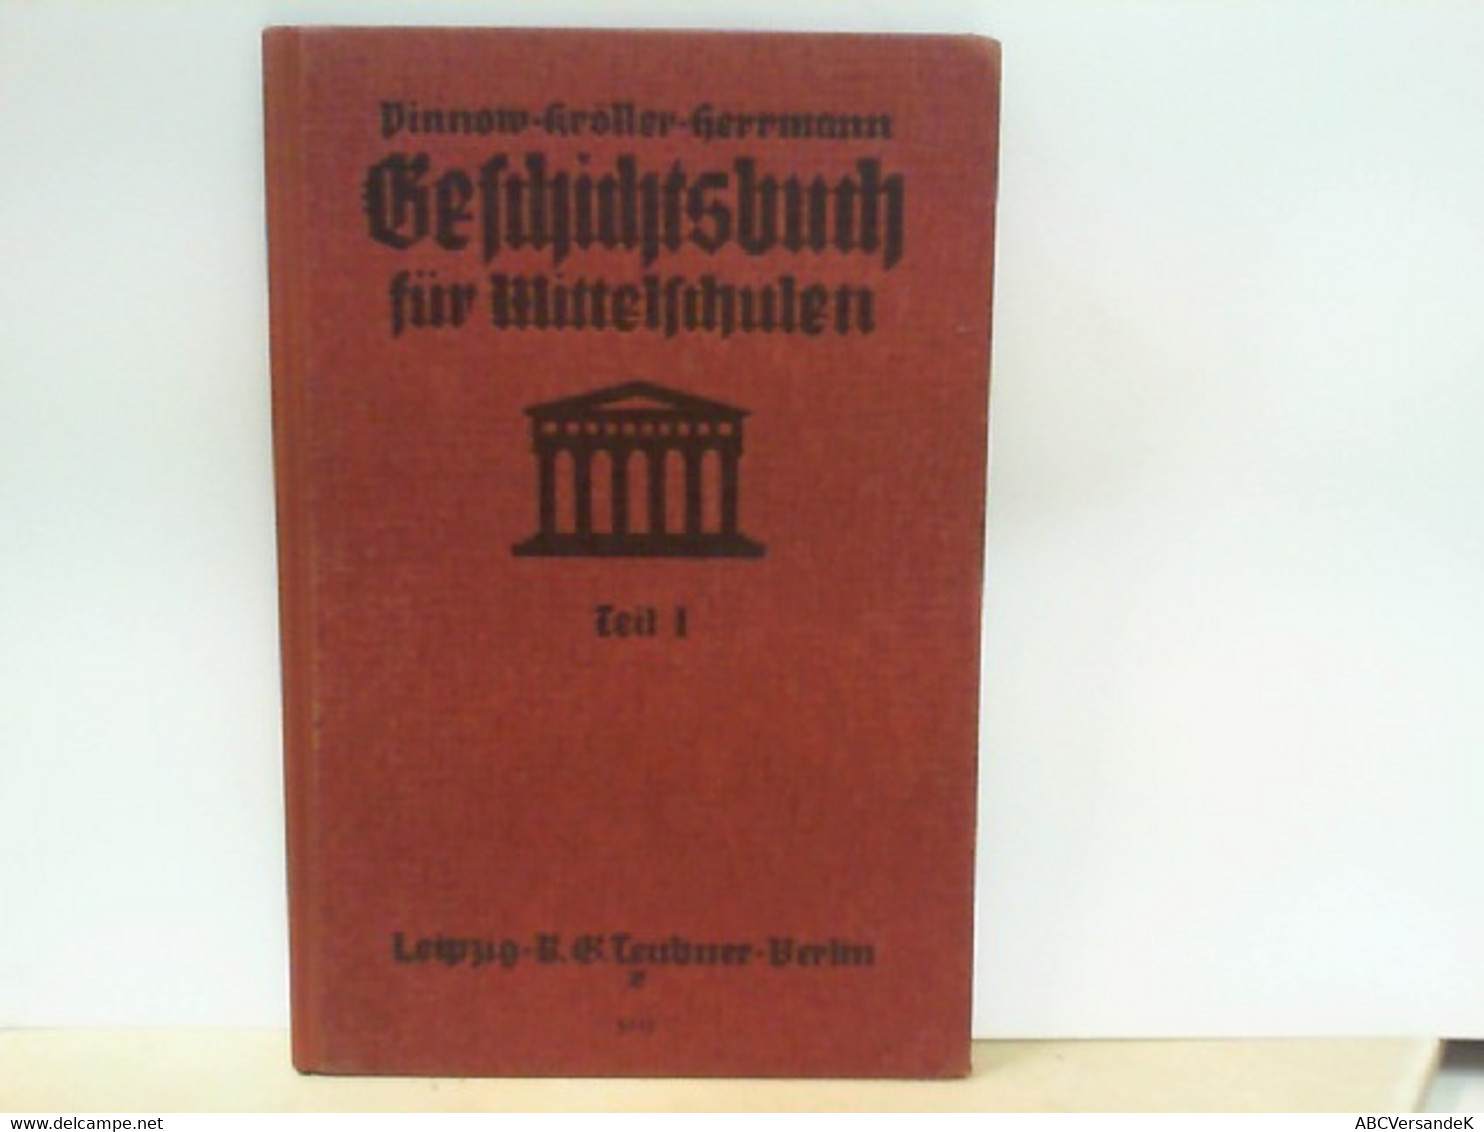 Pinnows Geschichtsbuch Für Mittelschulen - Teil 1 : Alte Geschichte - Libros De Enseñanza